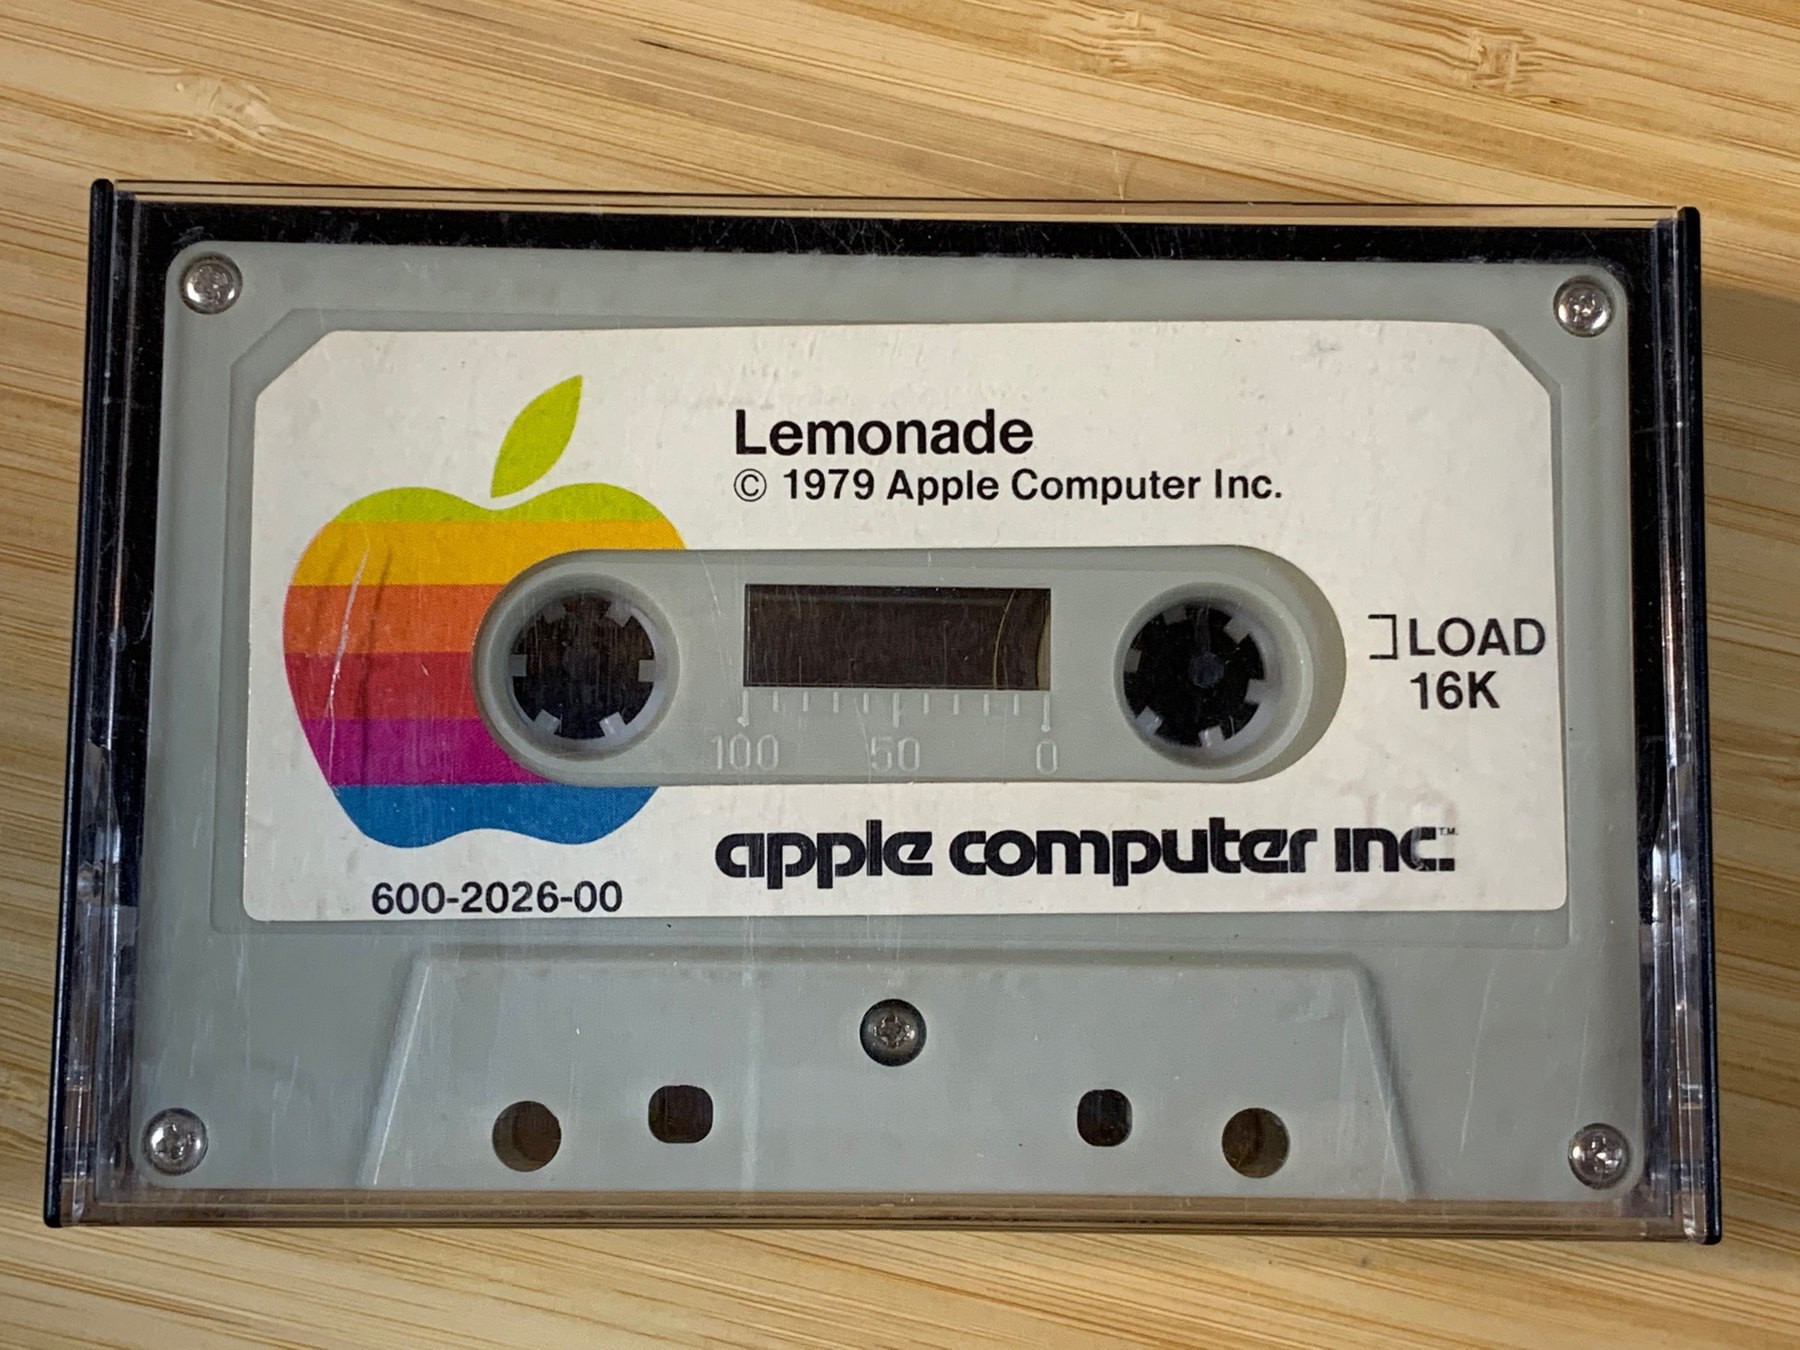 Cassette tape containing "Lemonade" for Apple 2